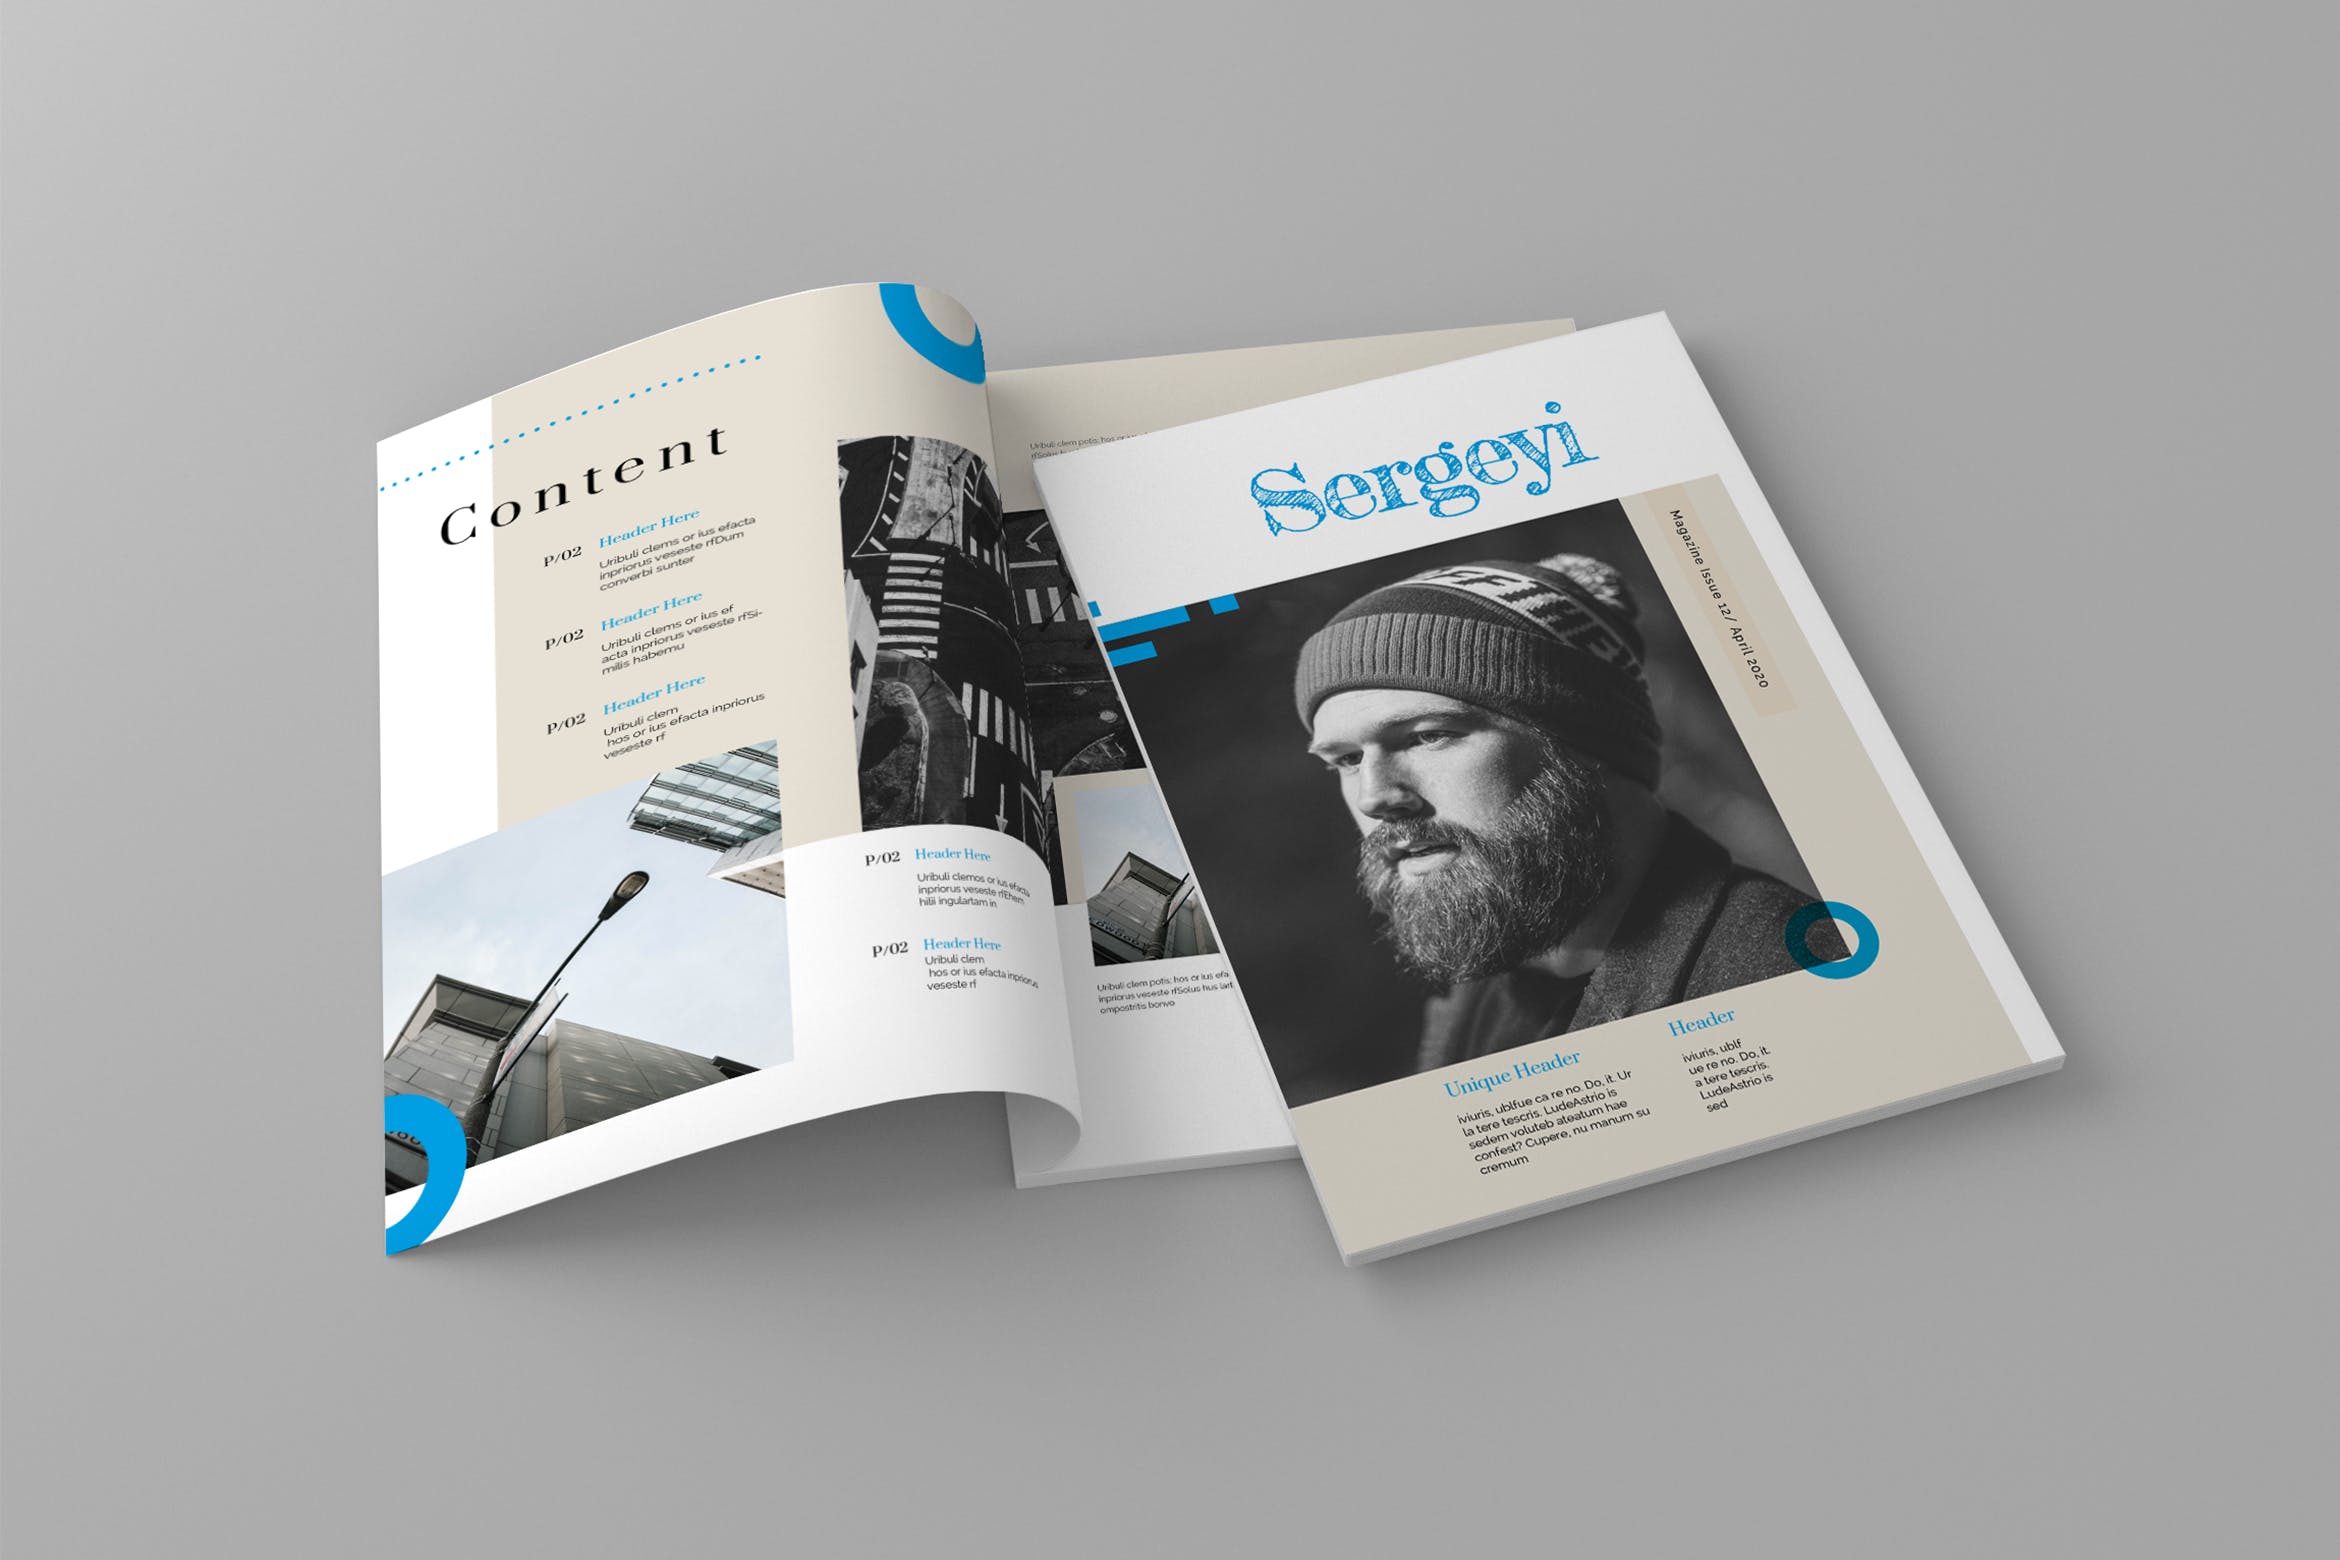 人物专访素材库精选杂志排版设计模板 Sergeyi – Magazine Template插图